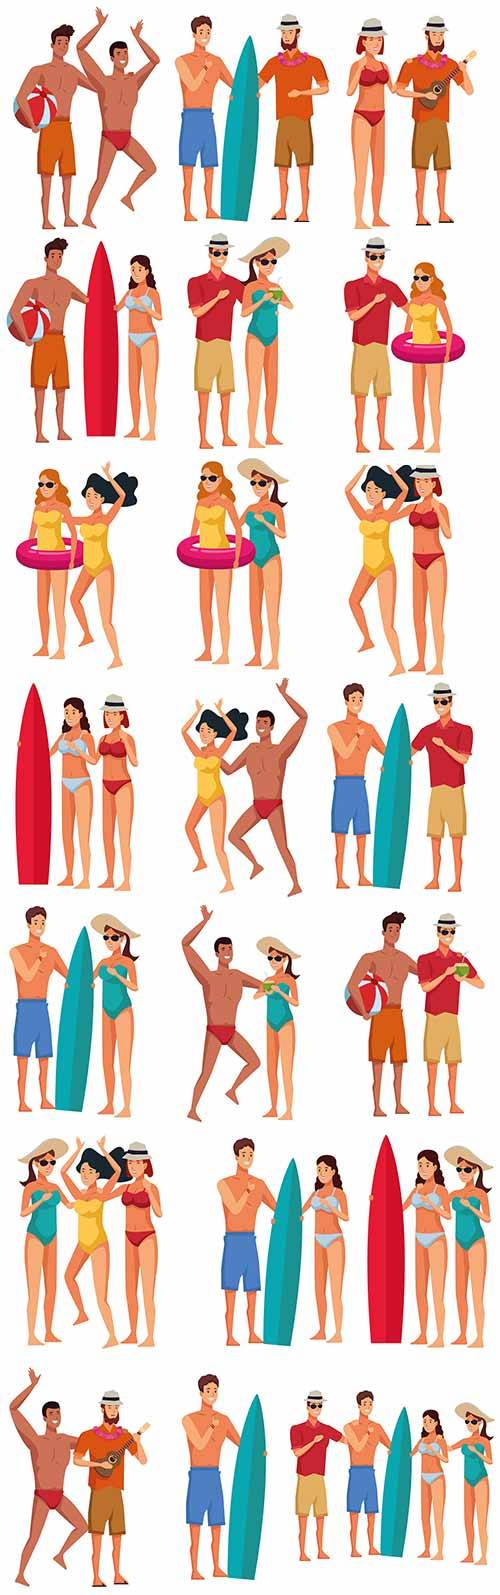  Молодые люди в купальниках - Векторный клипарт / Young people in bathing suits - Vector Graphics